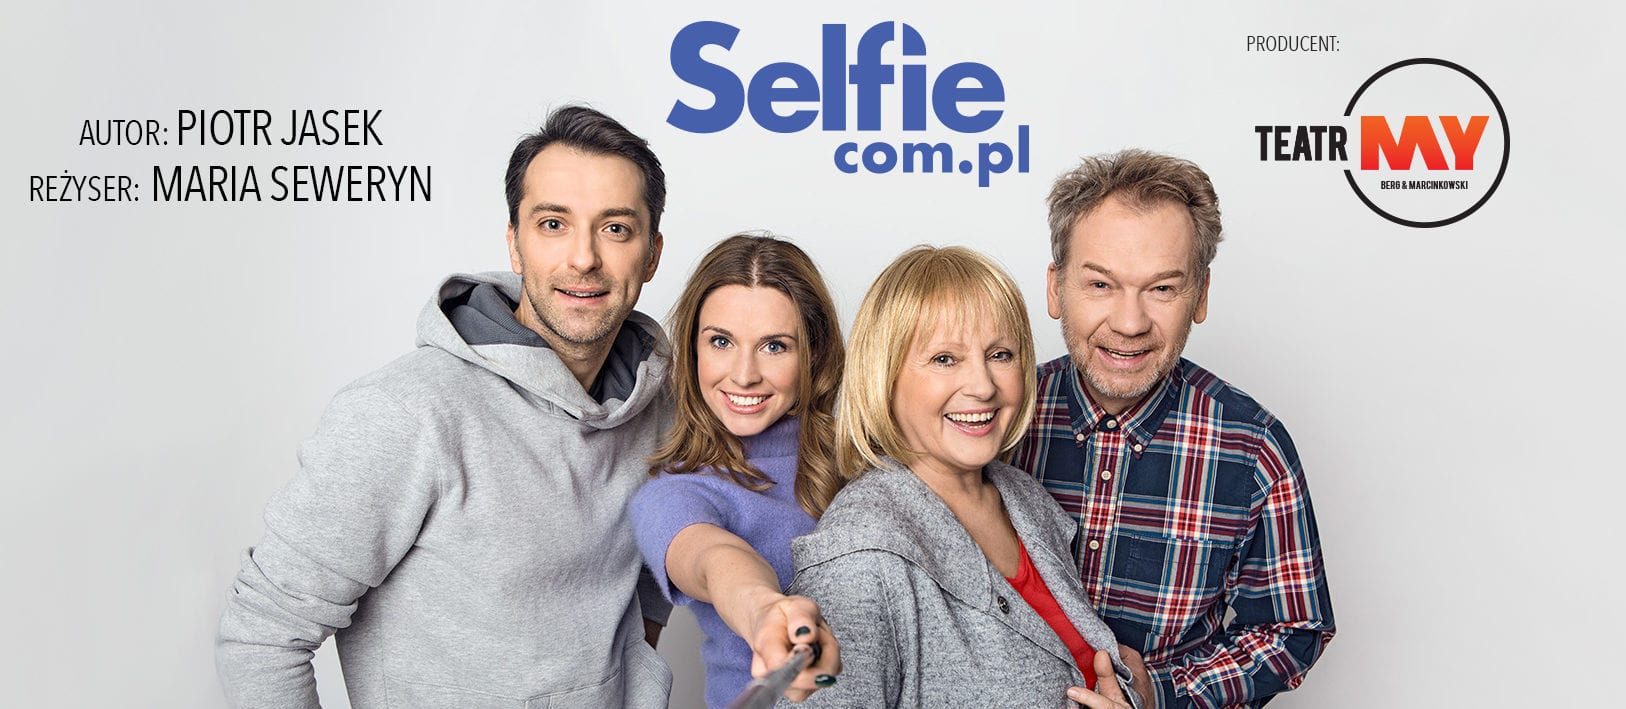 Selfie.com.pl – recenzja